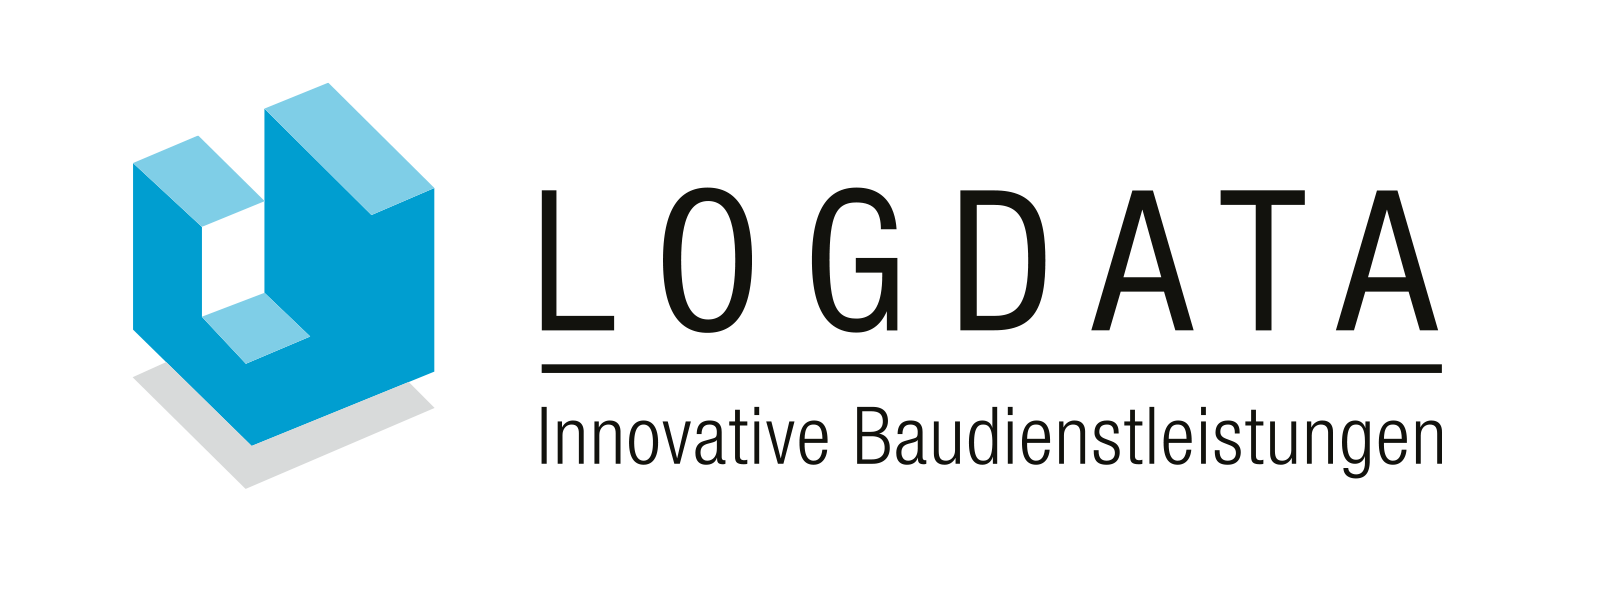 Logdata.ch